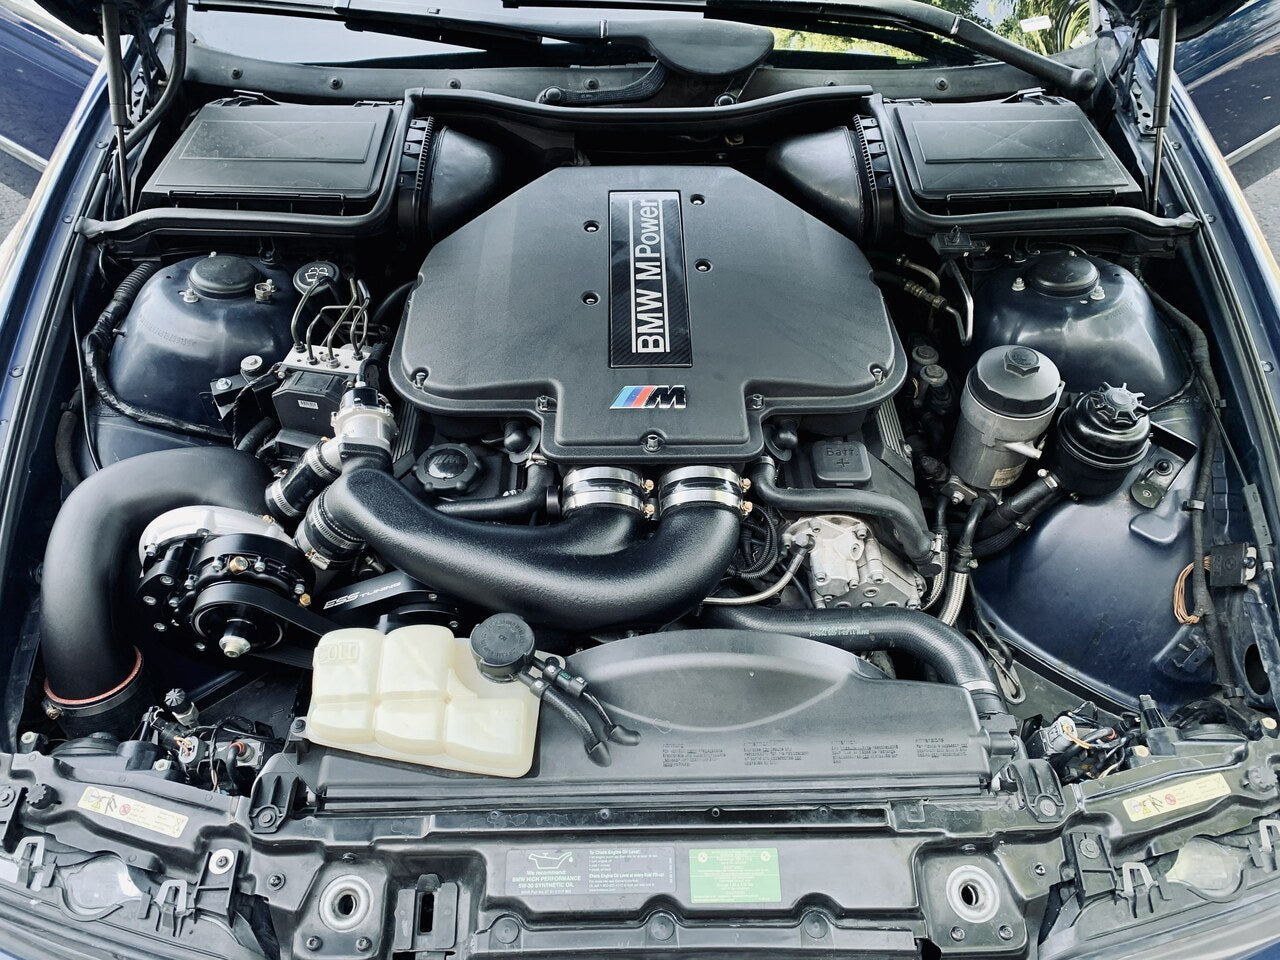 ESS Tuning - Sistema de supercargador BMW E39 M5 G1 (ESS-S62G1)